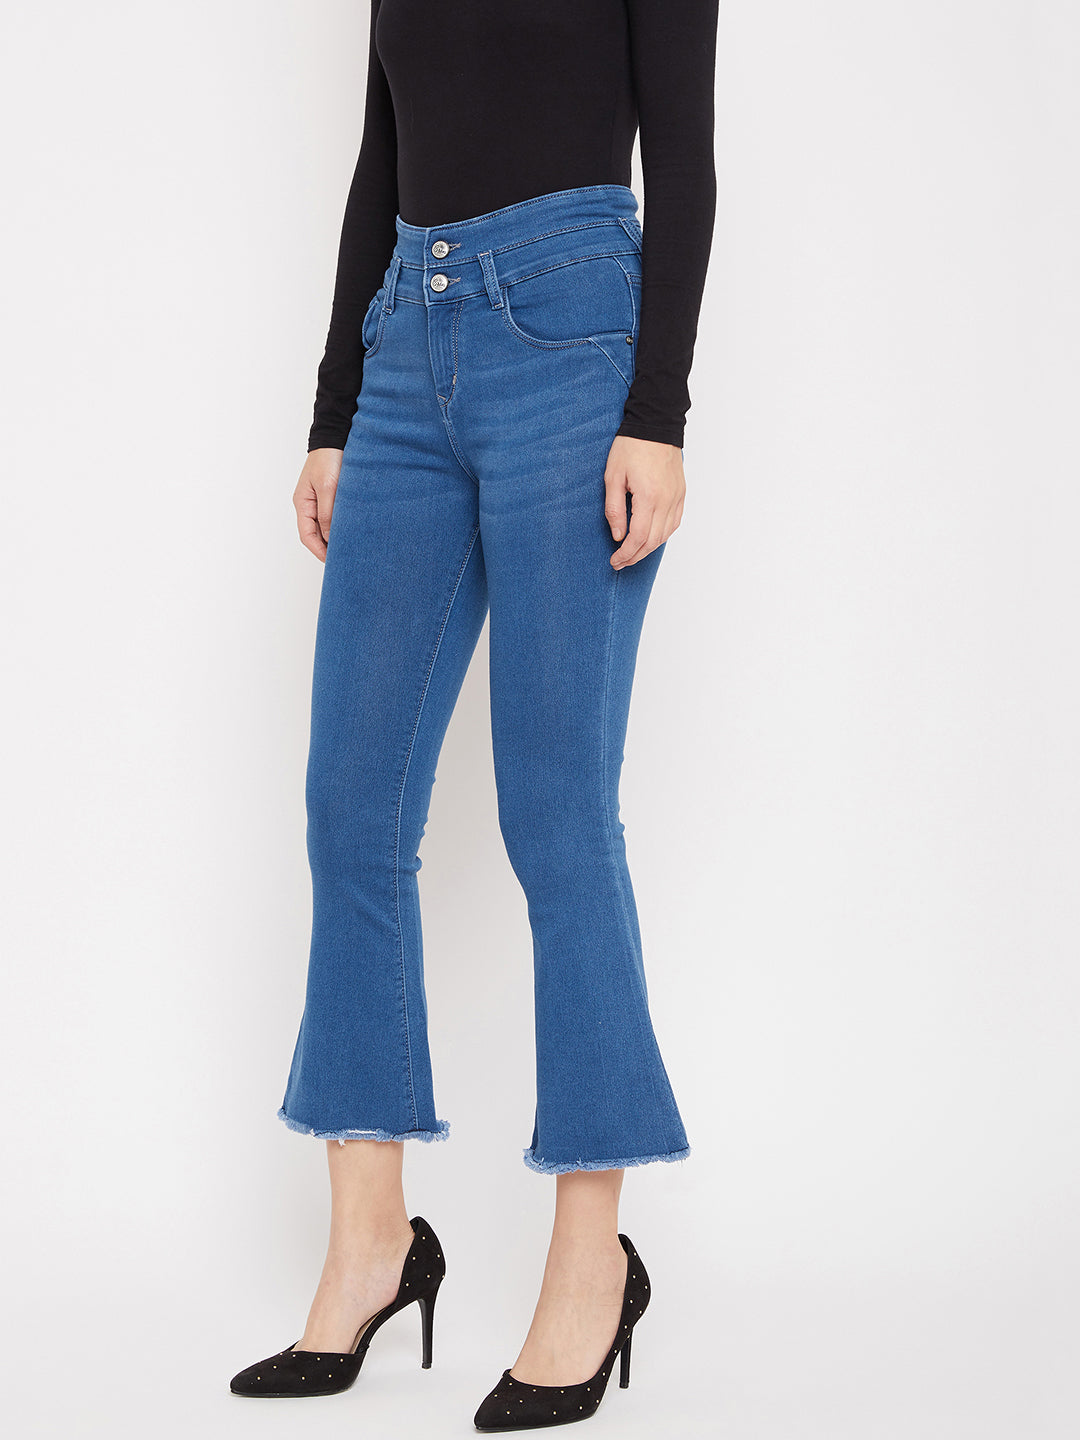 Blue Double Button Bootcut Jeans - Women Jeans